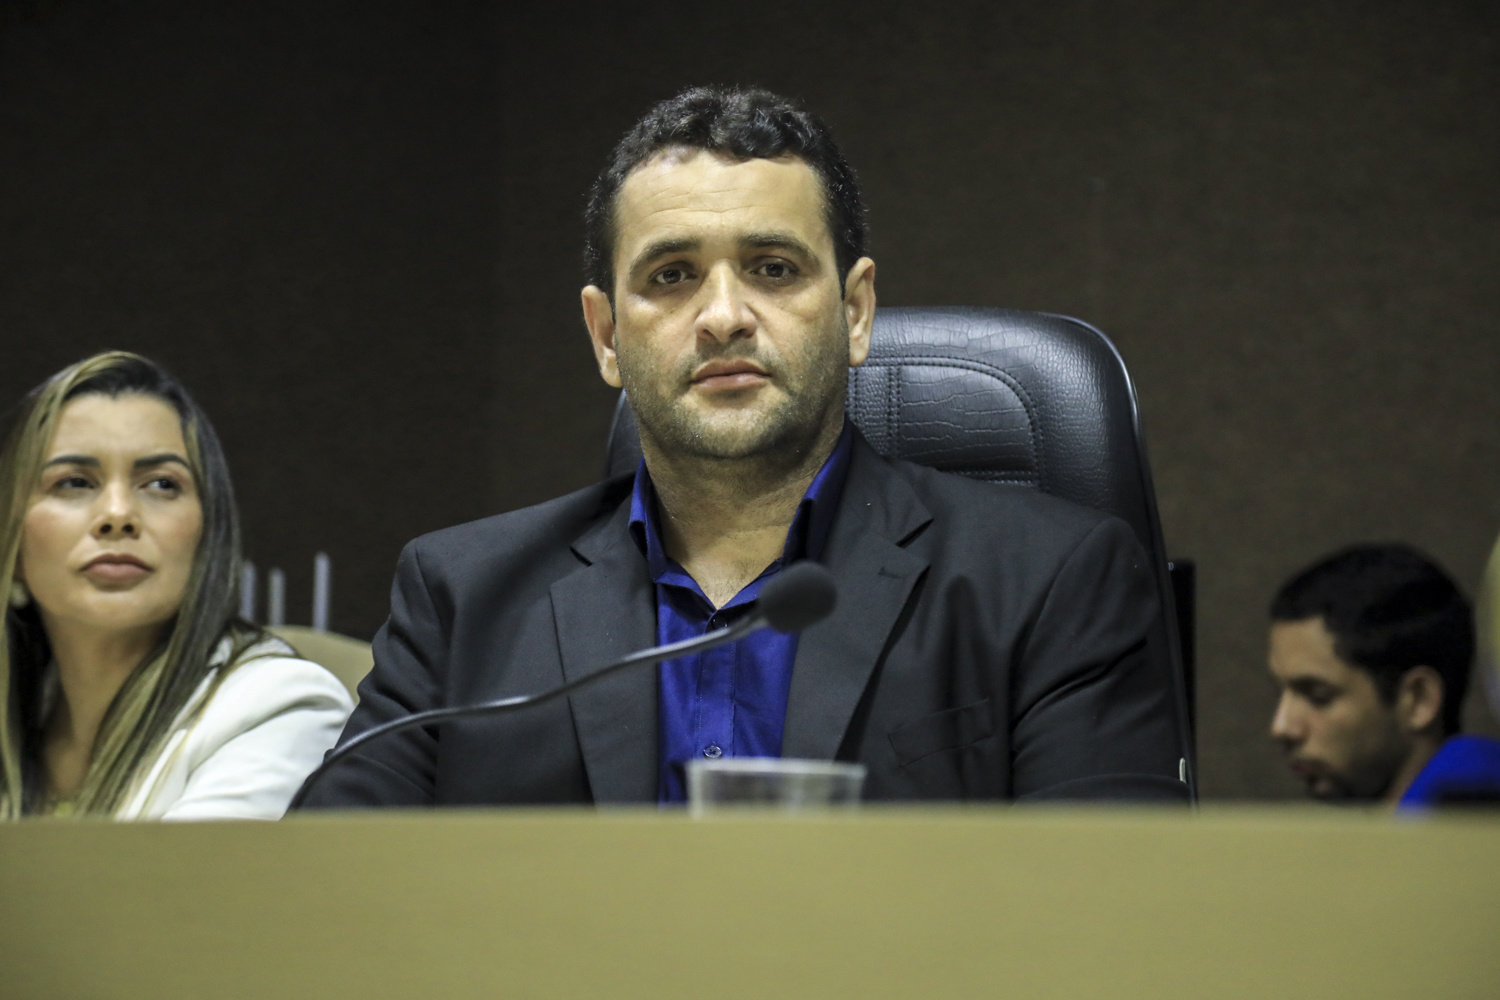 Presidente da Câmara Municipal de Nossa Senhora da Glória, vereador Flávio Vieira dos Santos. (Foto: Adilson Andrade/Ascom UFS)